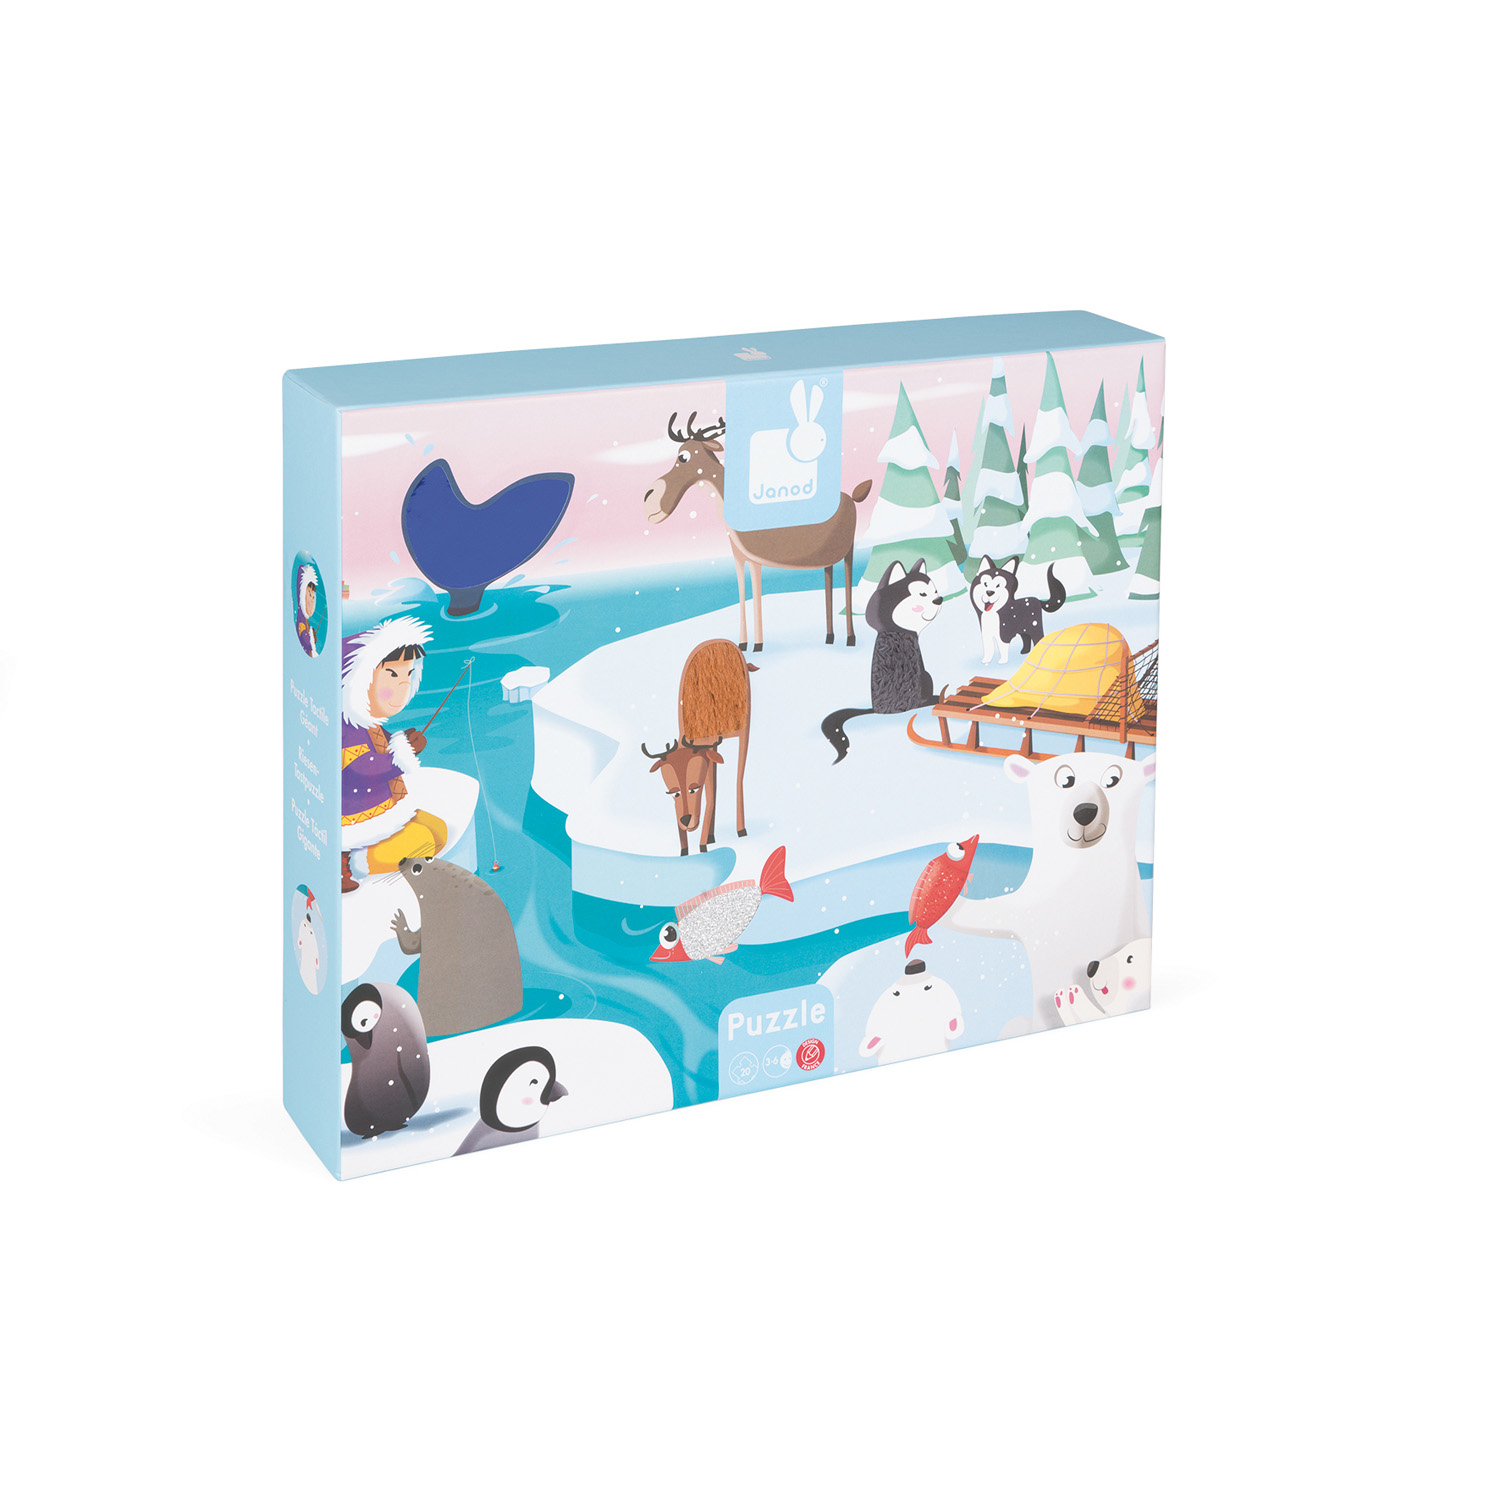 Puzzle & Livre - Puzzle en voyage, Le sous-marin des animaux